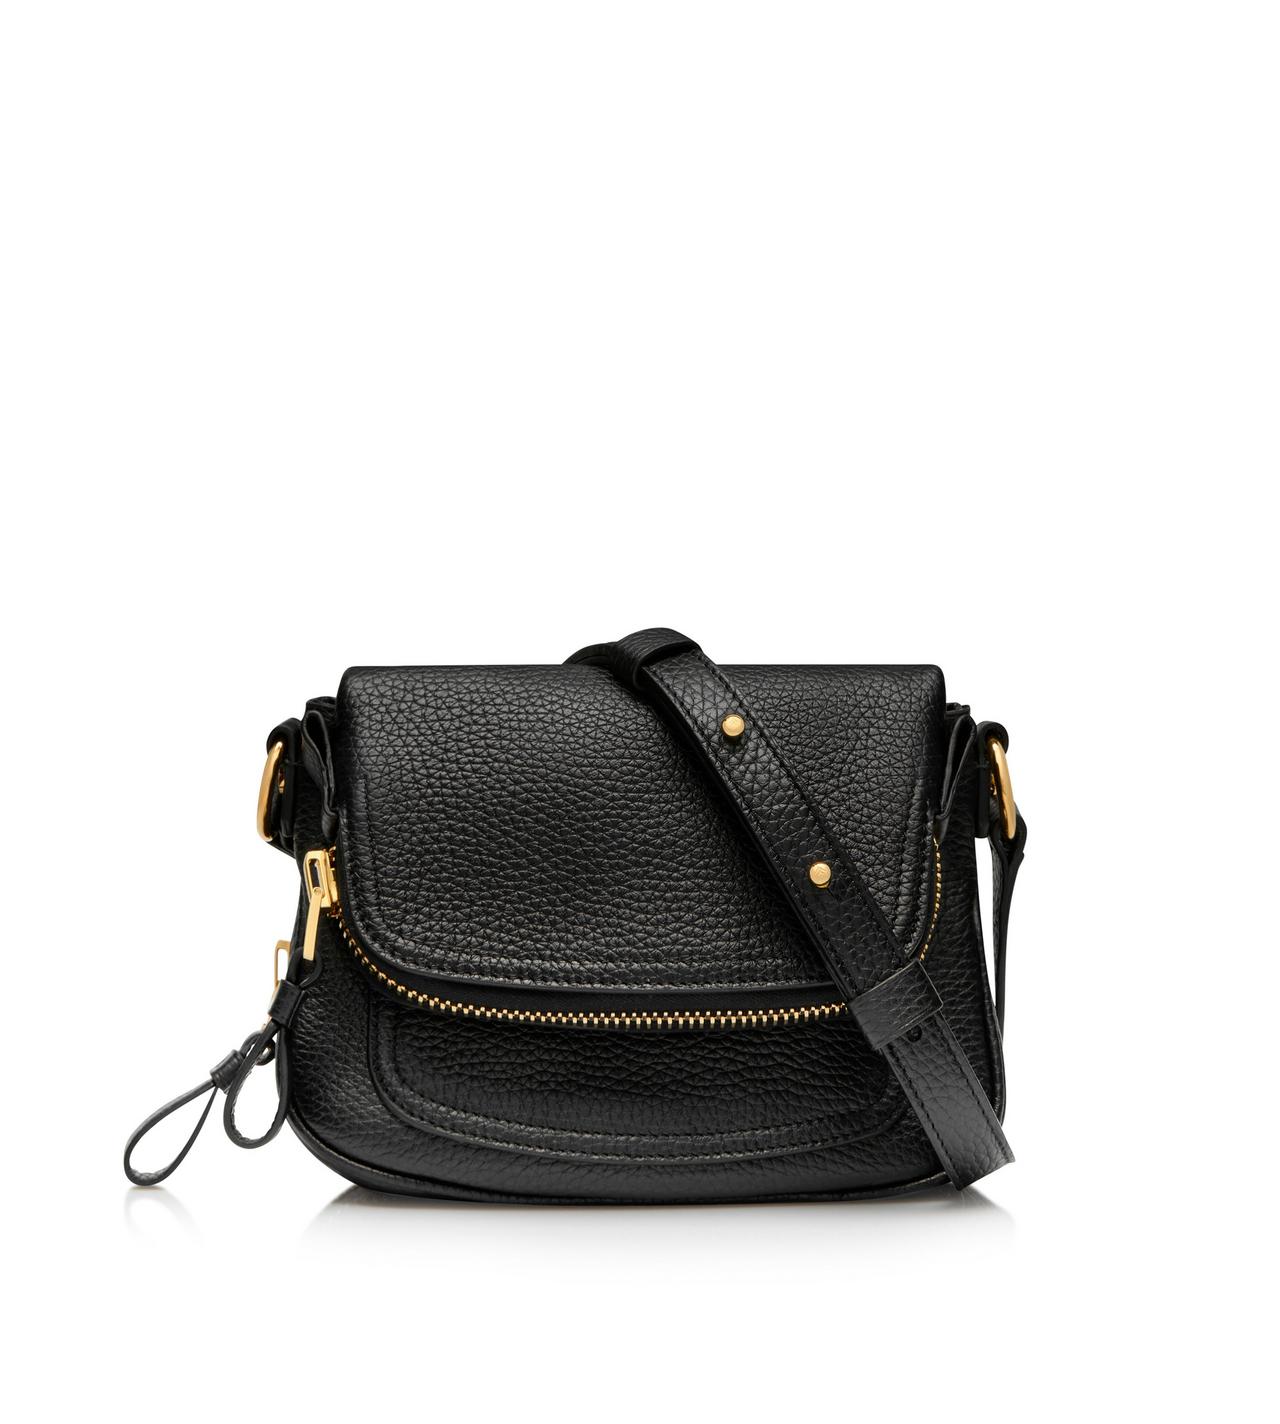 Black Leather Tom Ford Inspired Jennifer Purse Bag 